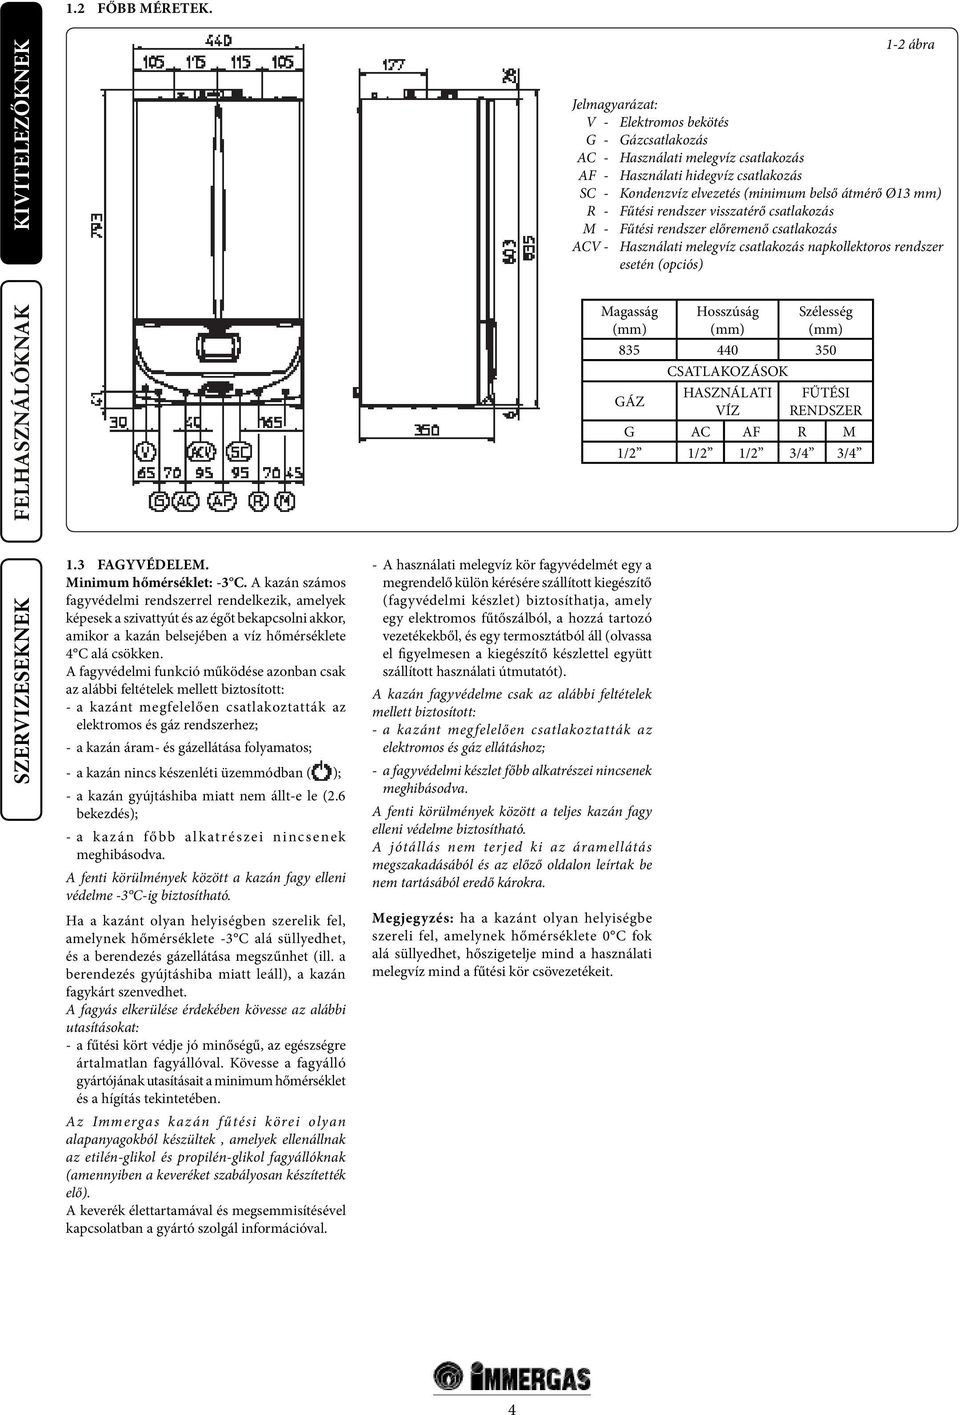 Fűtési rendszer visszatérő csatlakozás M - Fűtési rendszer előremenő csatlakozás ACV - Használati melegvíz csatlakozás napkollektoros rendszer esetén (opciós) Magasság (mm) Hosszúság (mm) Szélesség